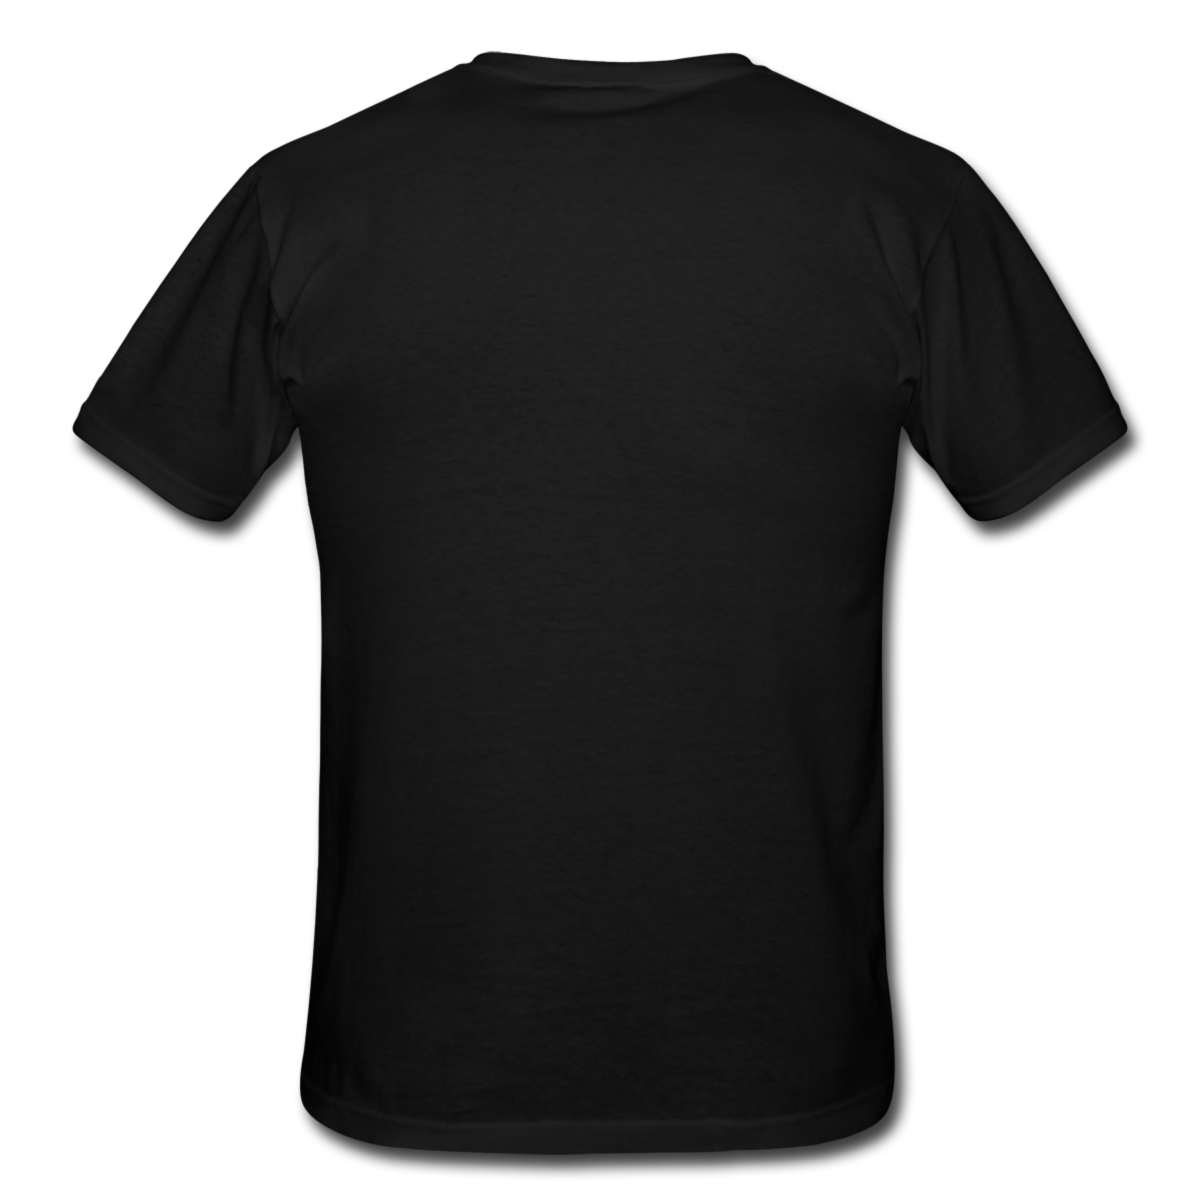 T-skjorte Herre Sort/Hvit - Frontprint